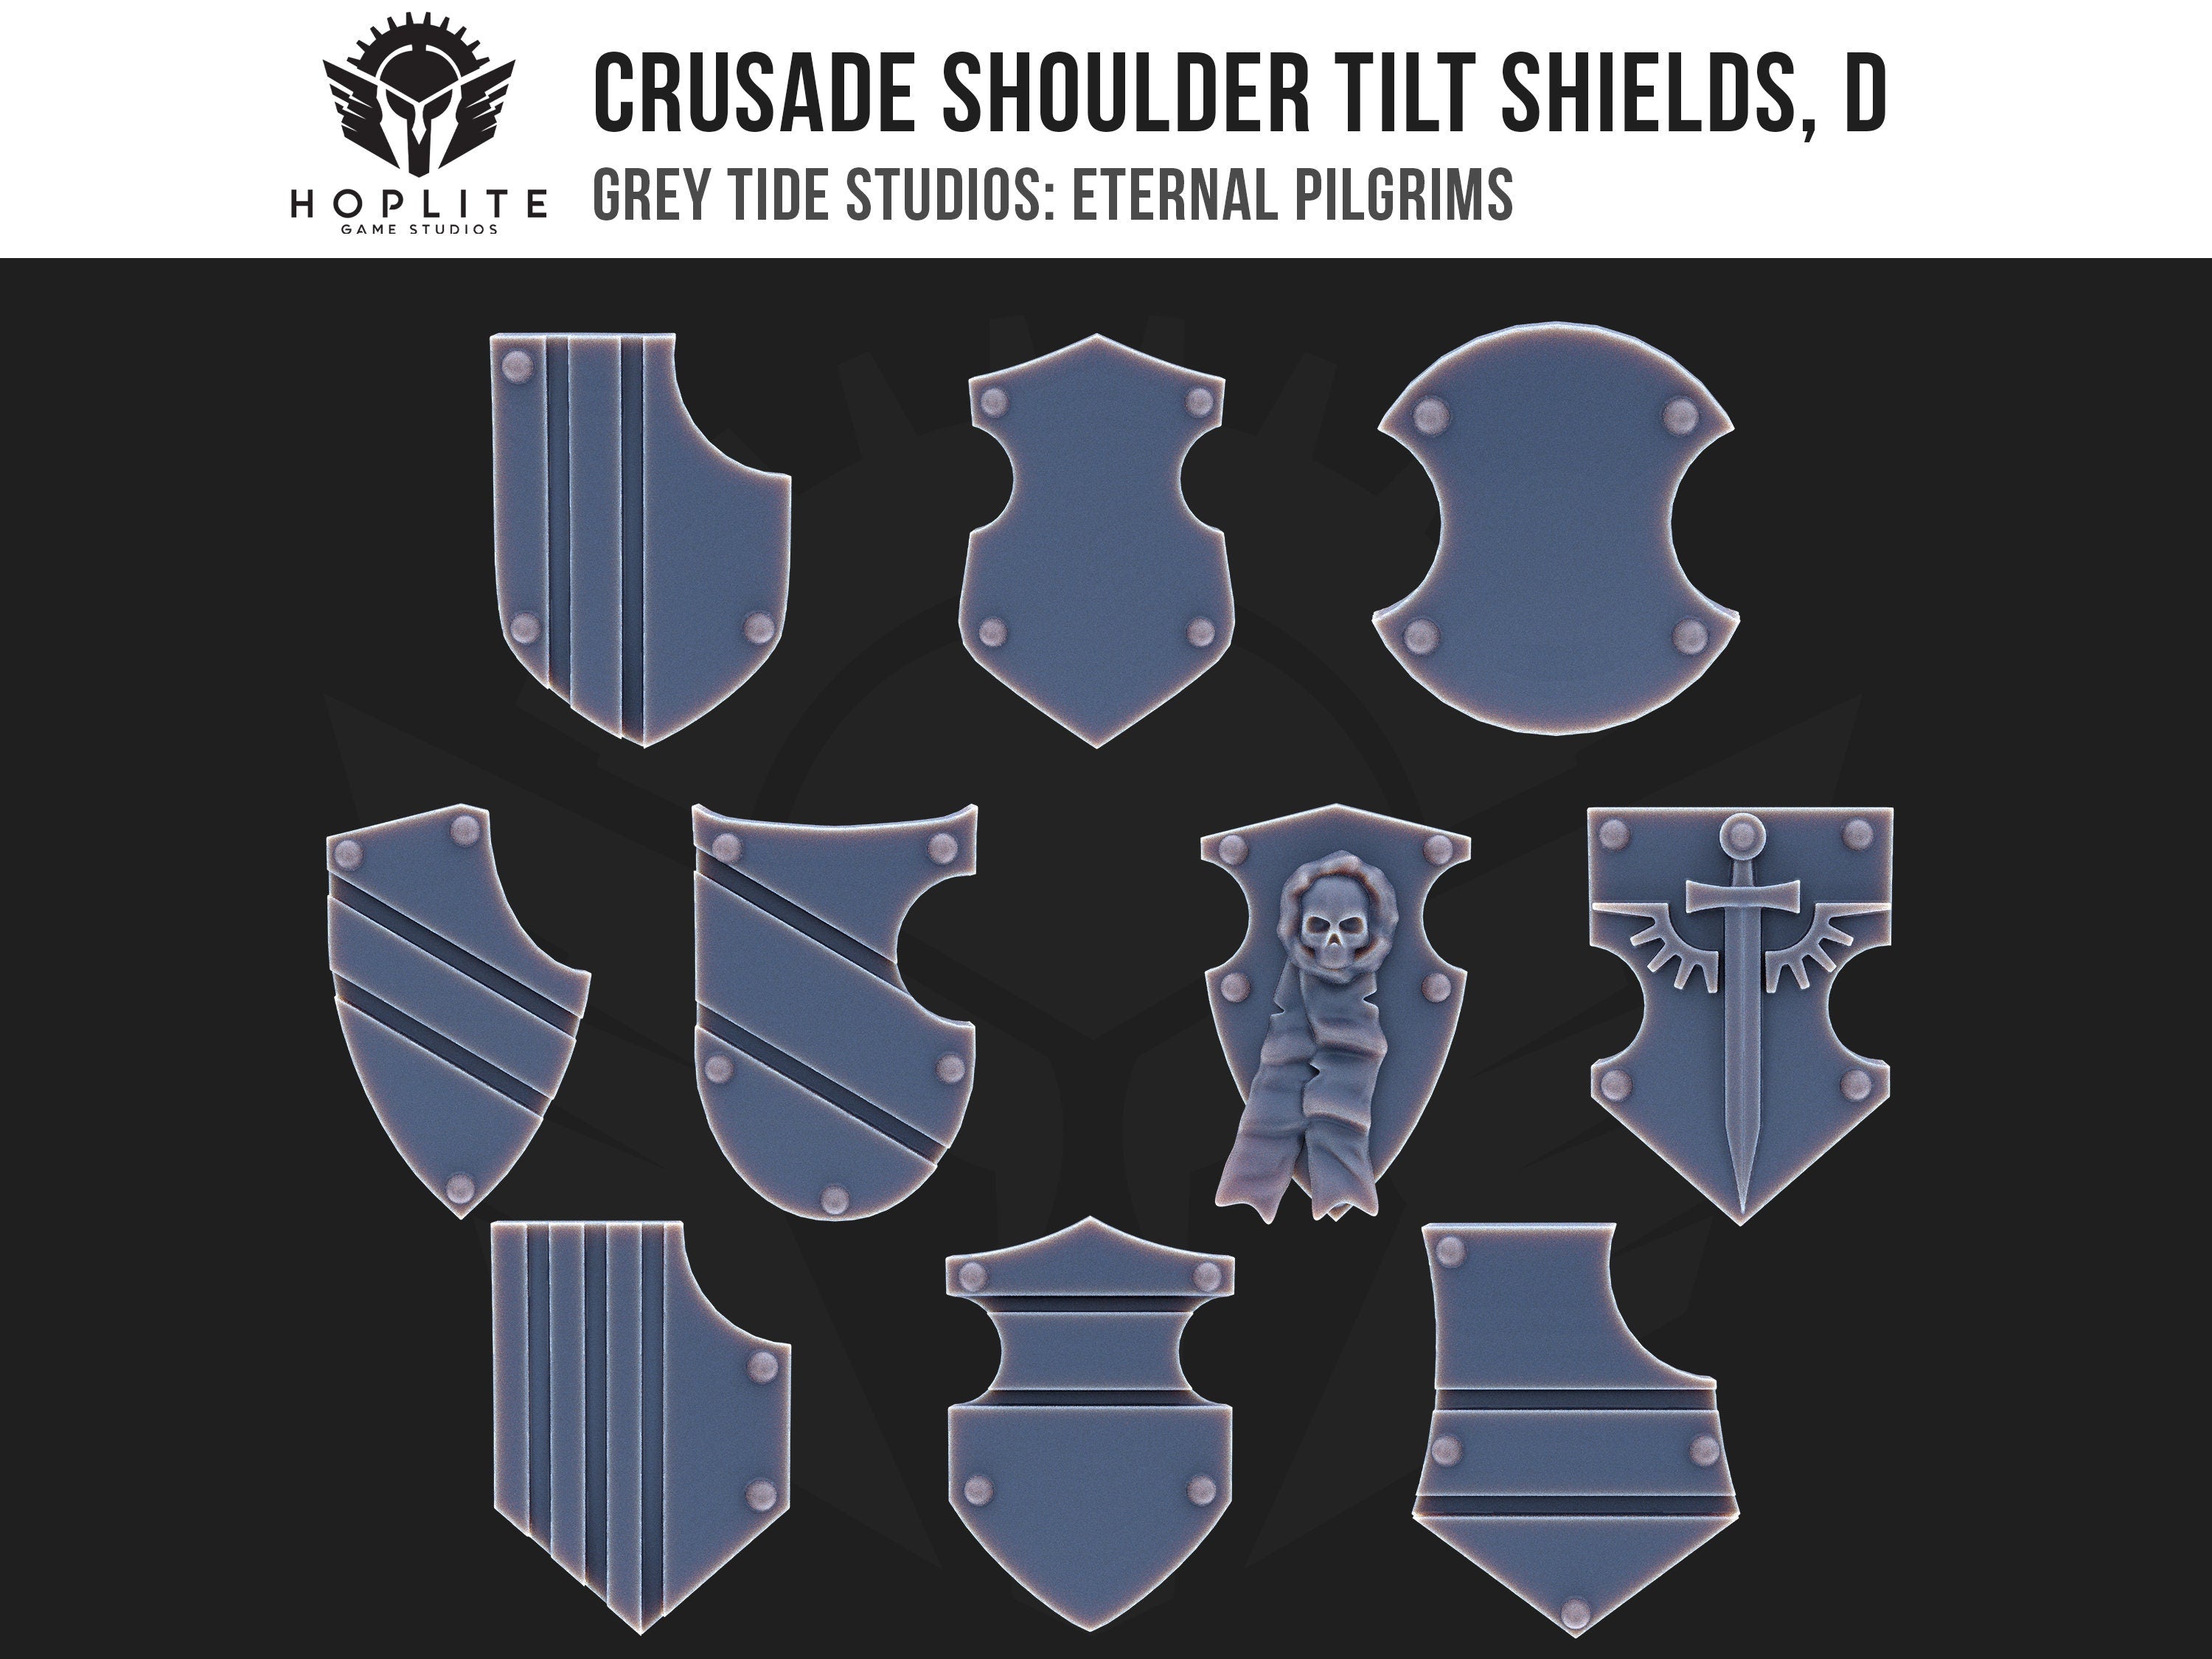 Escudos de inclinación de hombros de Cruzada, D (x10) | Estudios de marea gris | Peregrinos eternos | Piezas y brocas de conversión